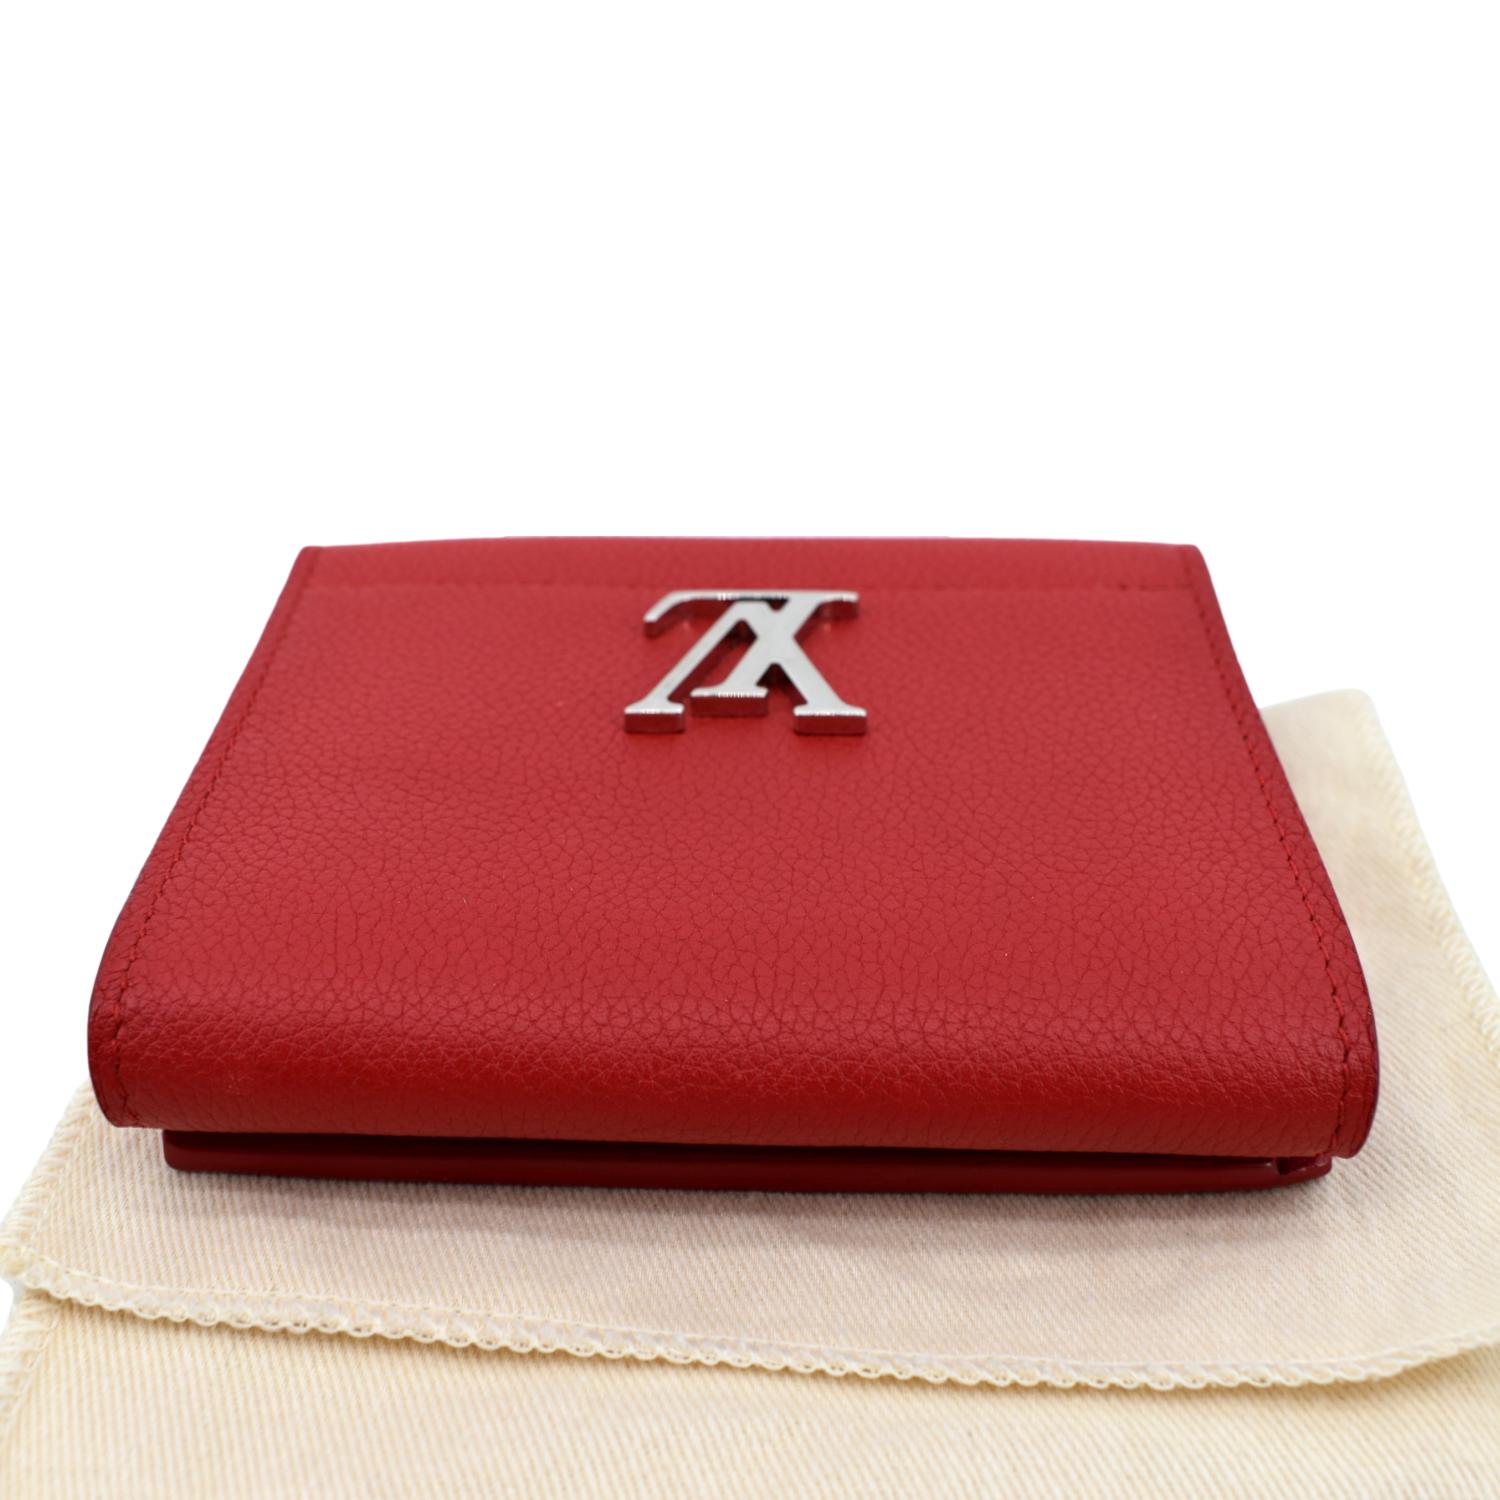 Louis Vuitton Red Calfskin Lock Me II Wallet QJAFGV3PRB001